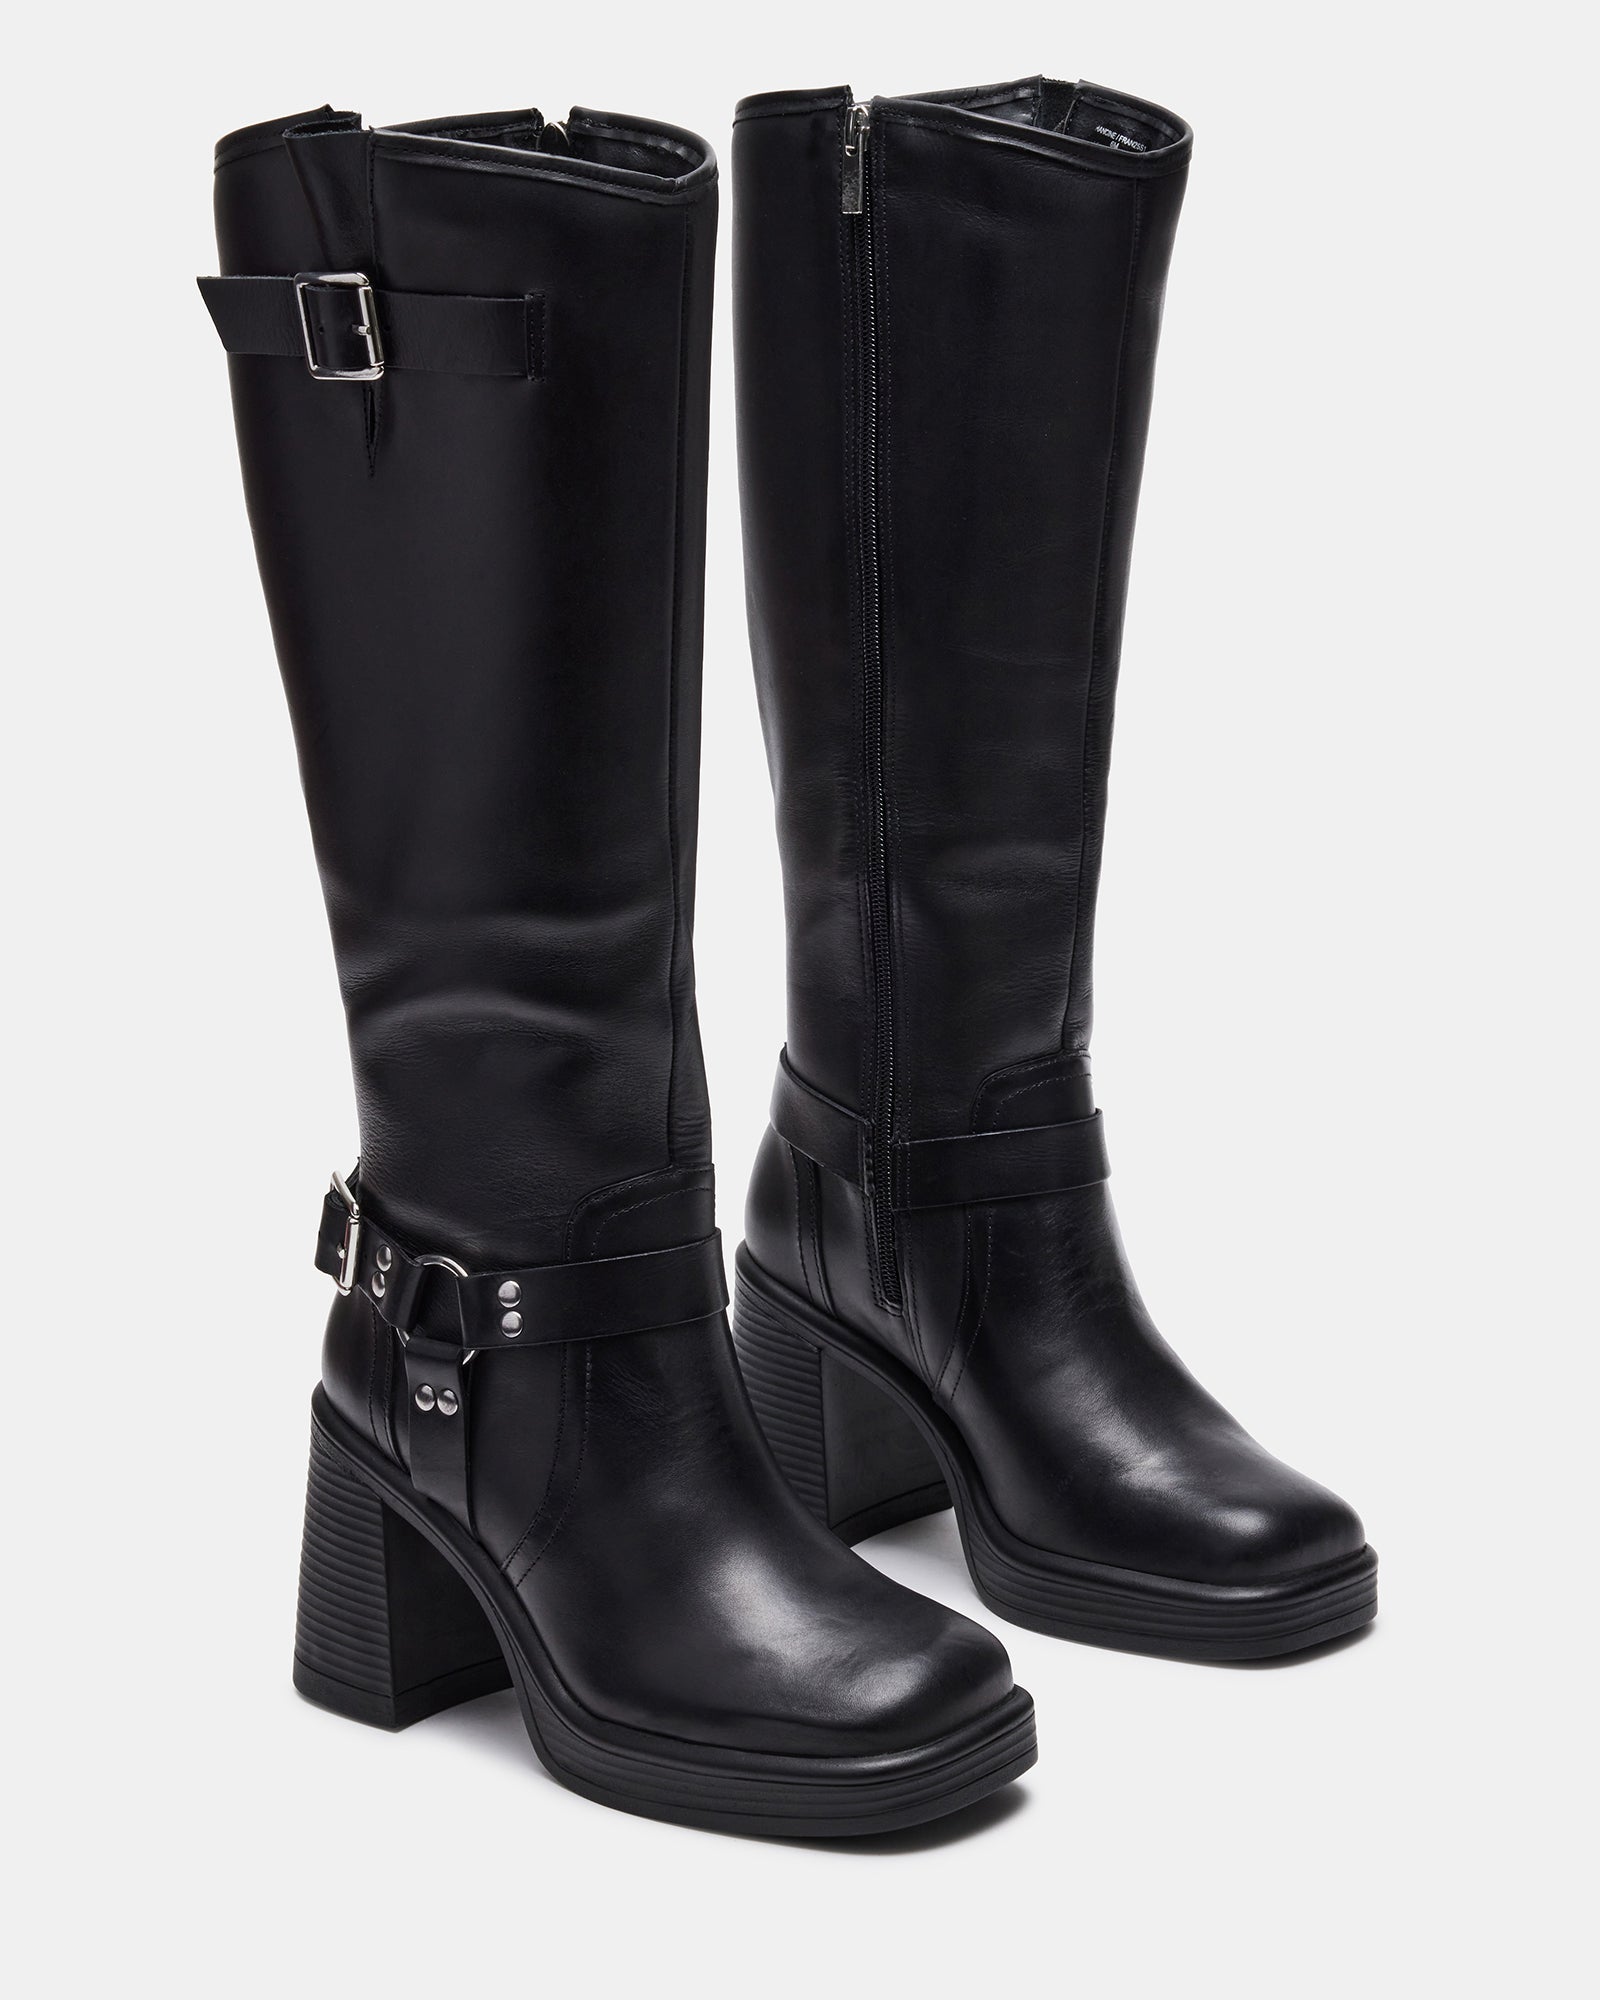 FRANCINE Black Leather Block Heel Knee High Boot | Women's Boots ...